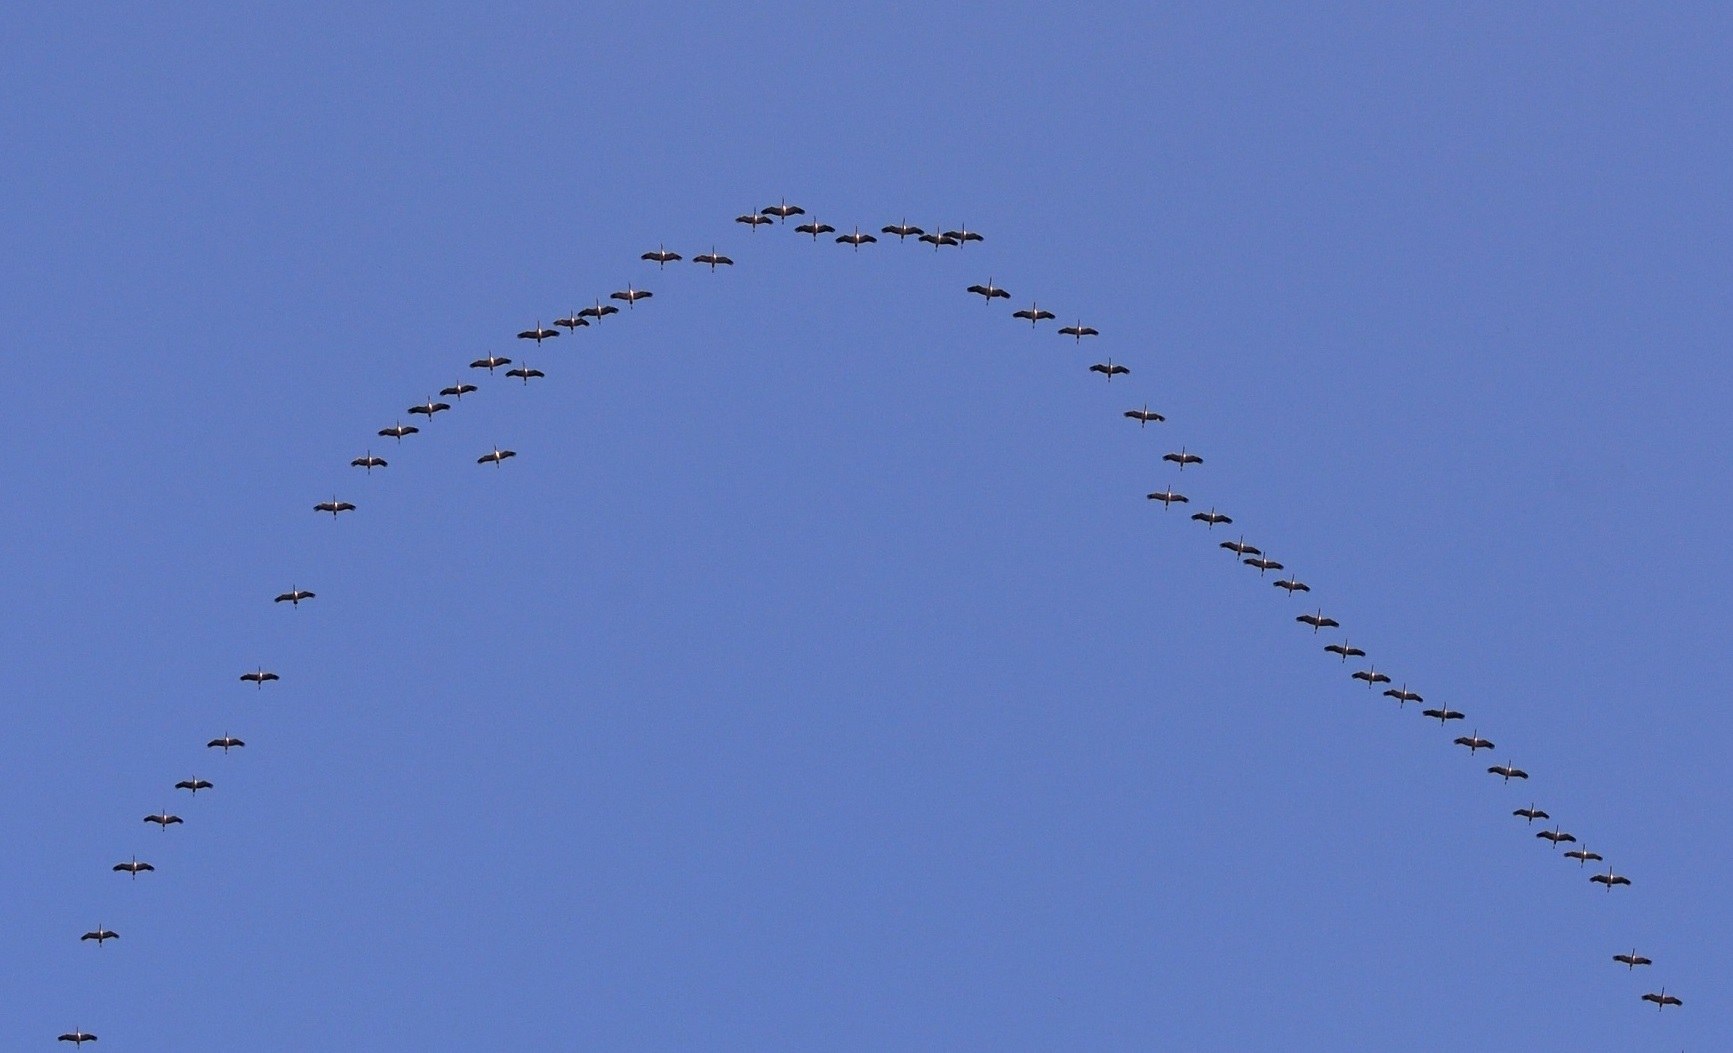 Zugvögel schonen ihre Energie-Ressourcen im Flug geschickt durch Bildung von V-Formationen.